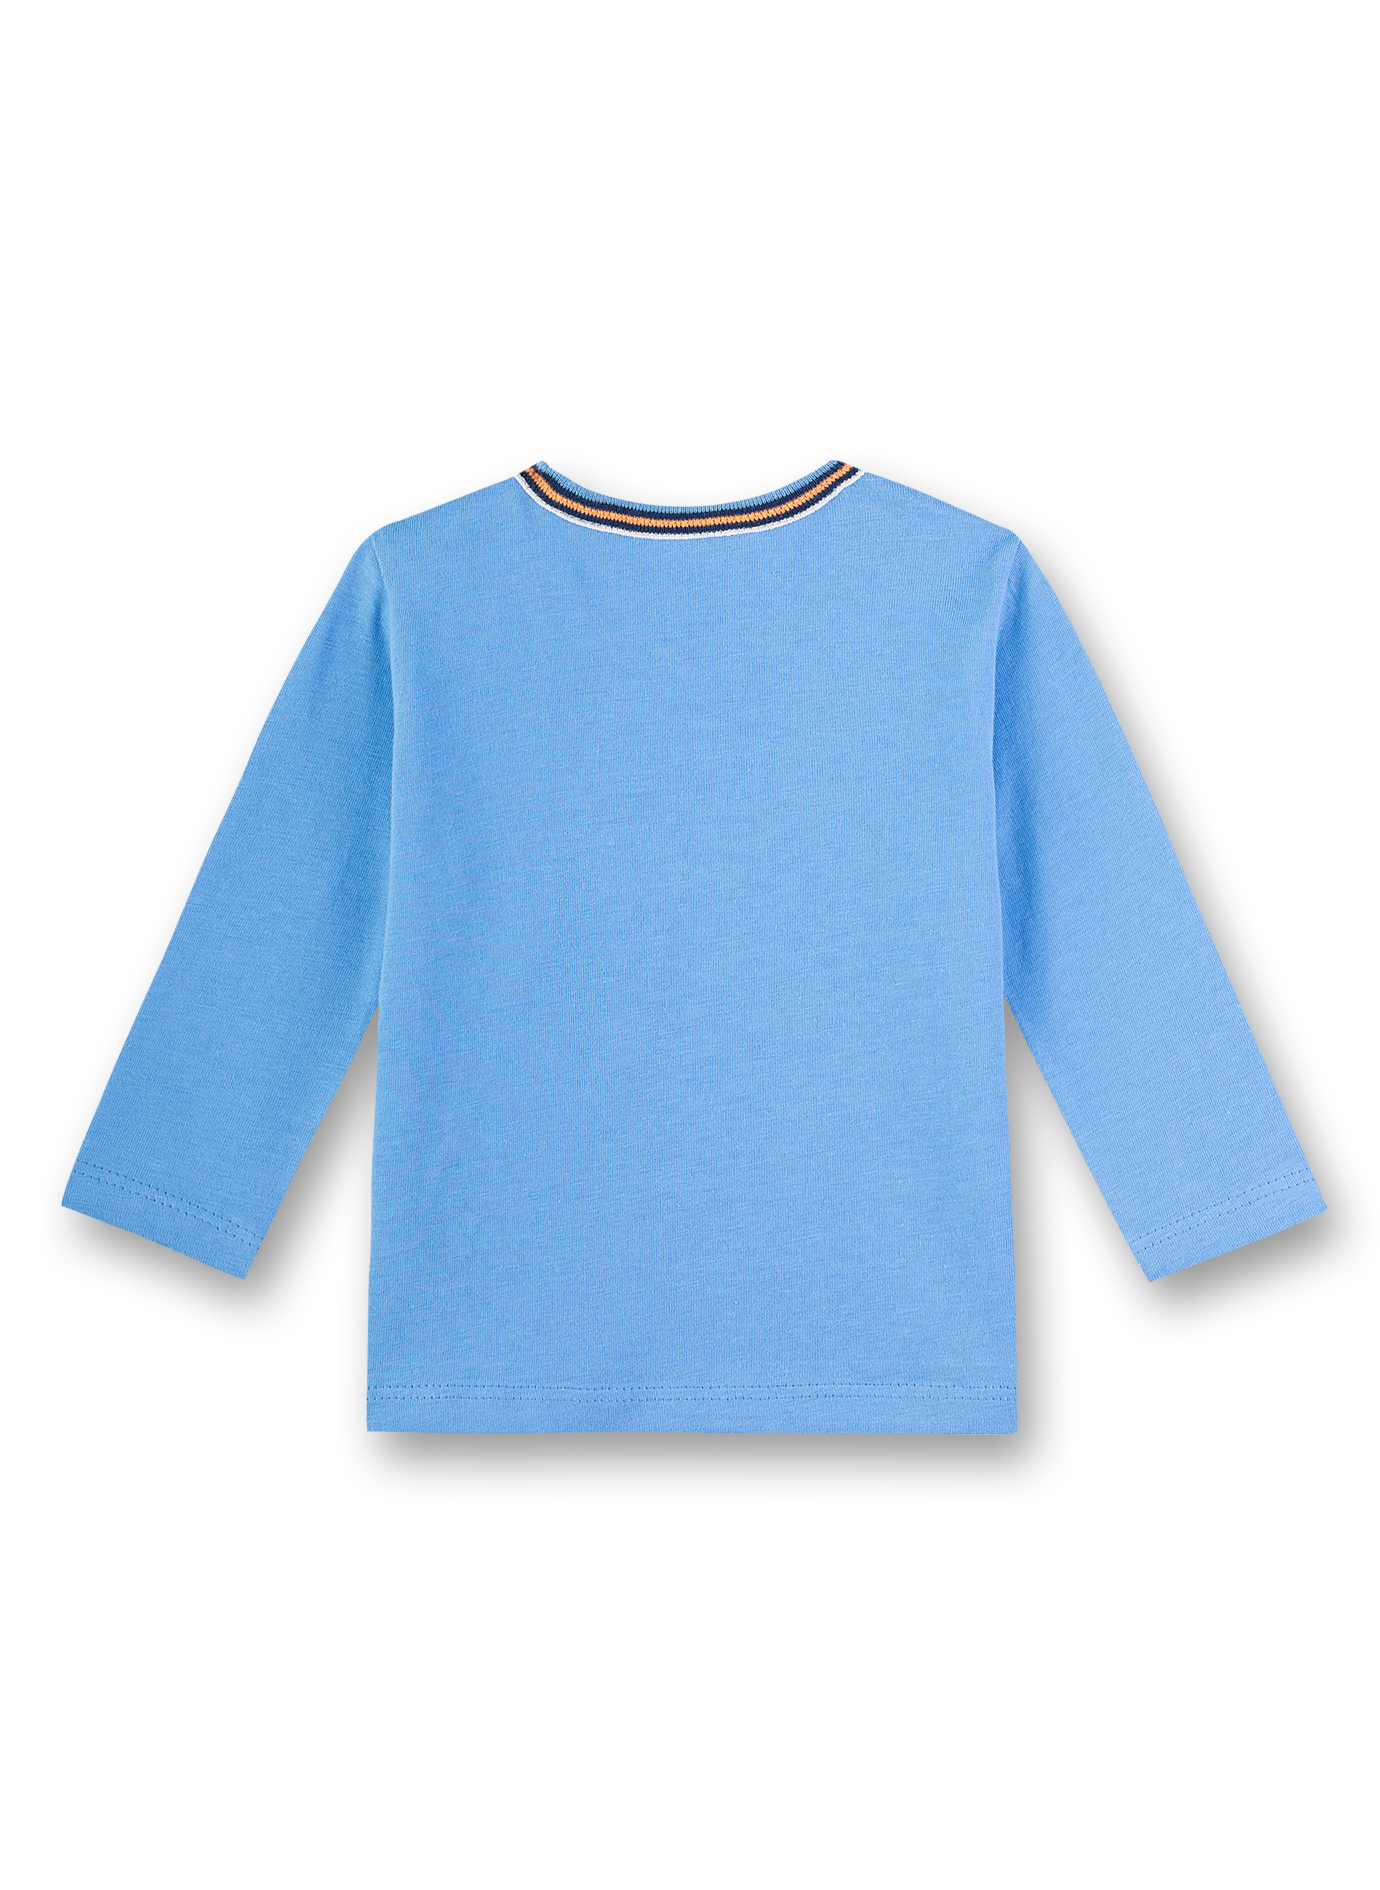 Jungen-Shirt Blau Submarine